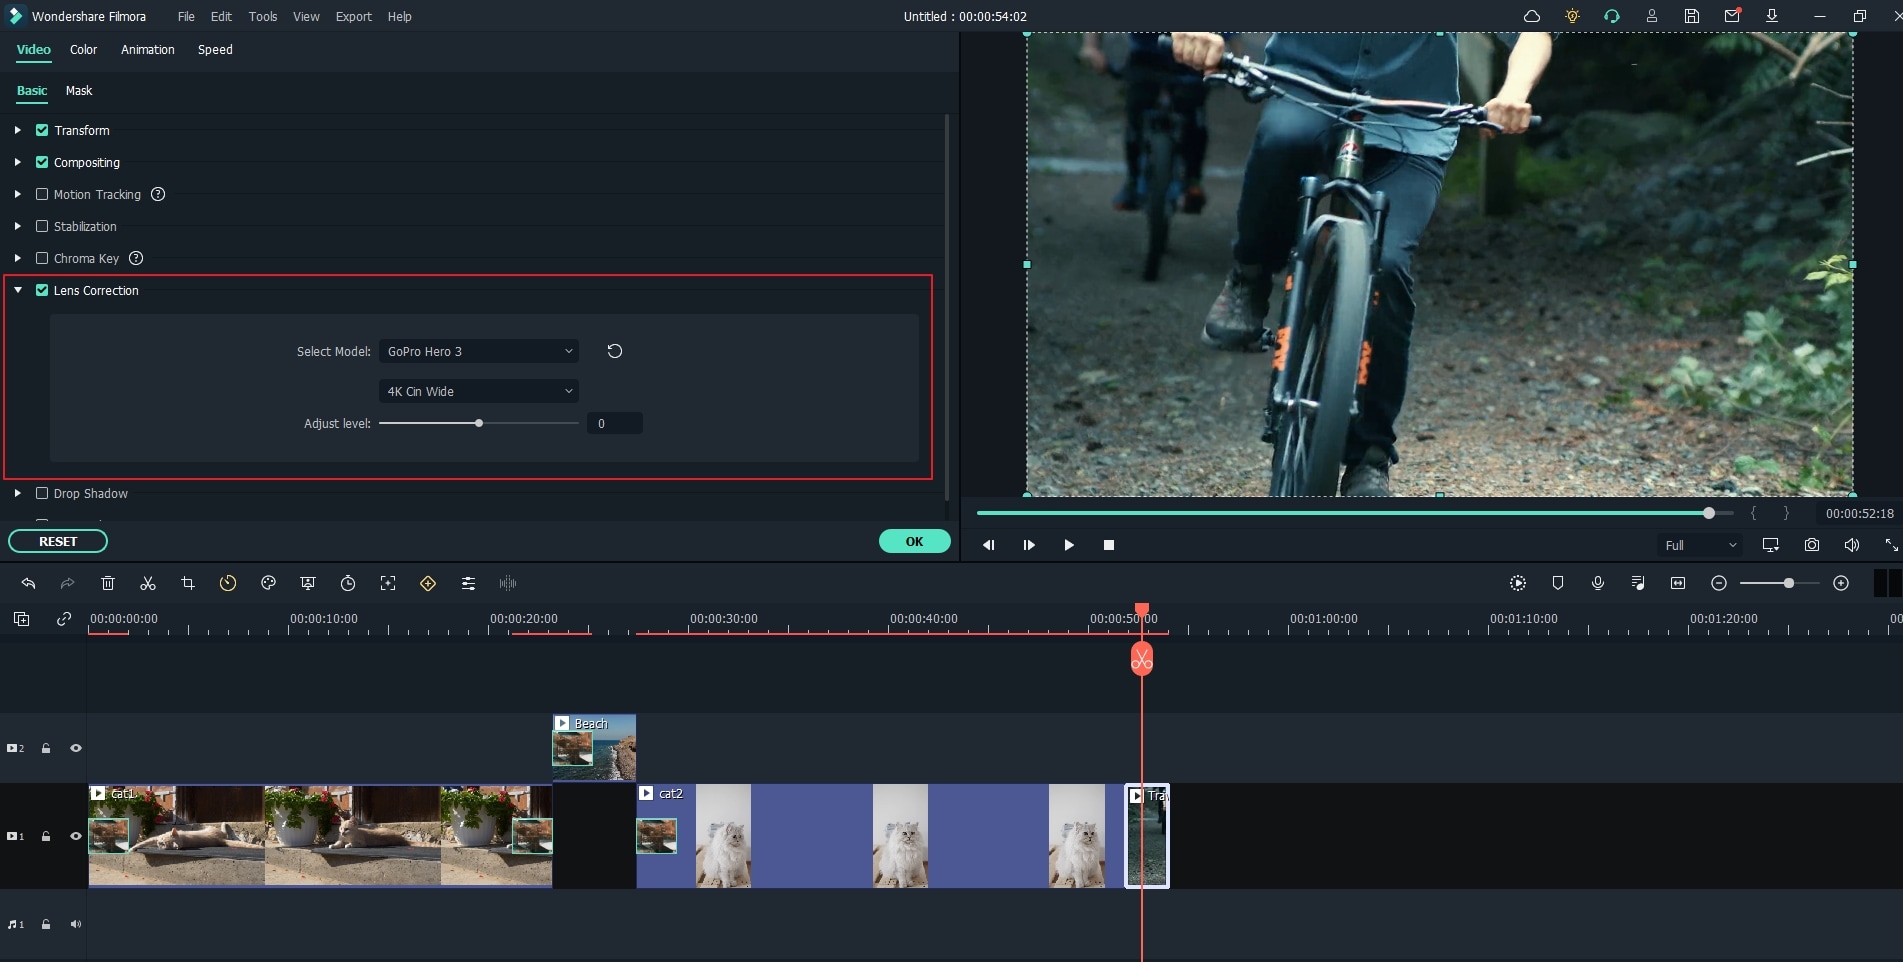 action cam editing tools in filmora